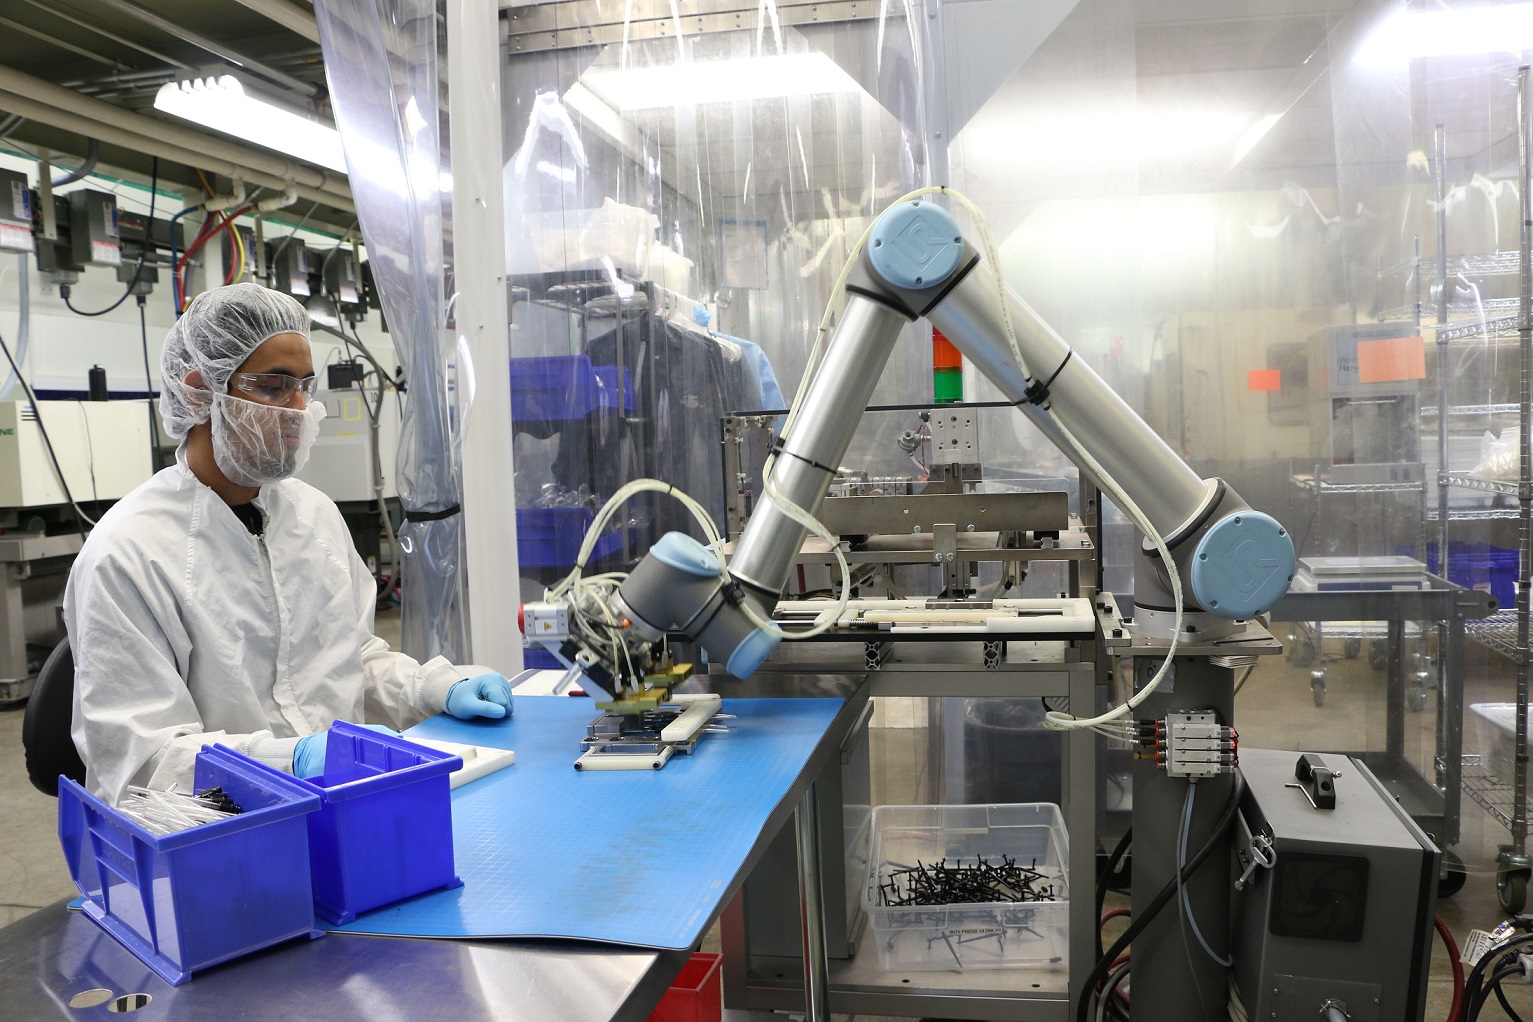 Universal Robots z rekordowym przychodem ponad 300 mln dolarów